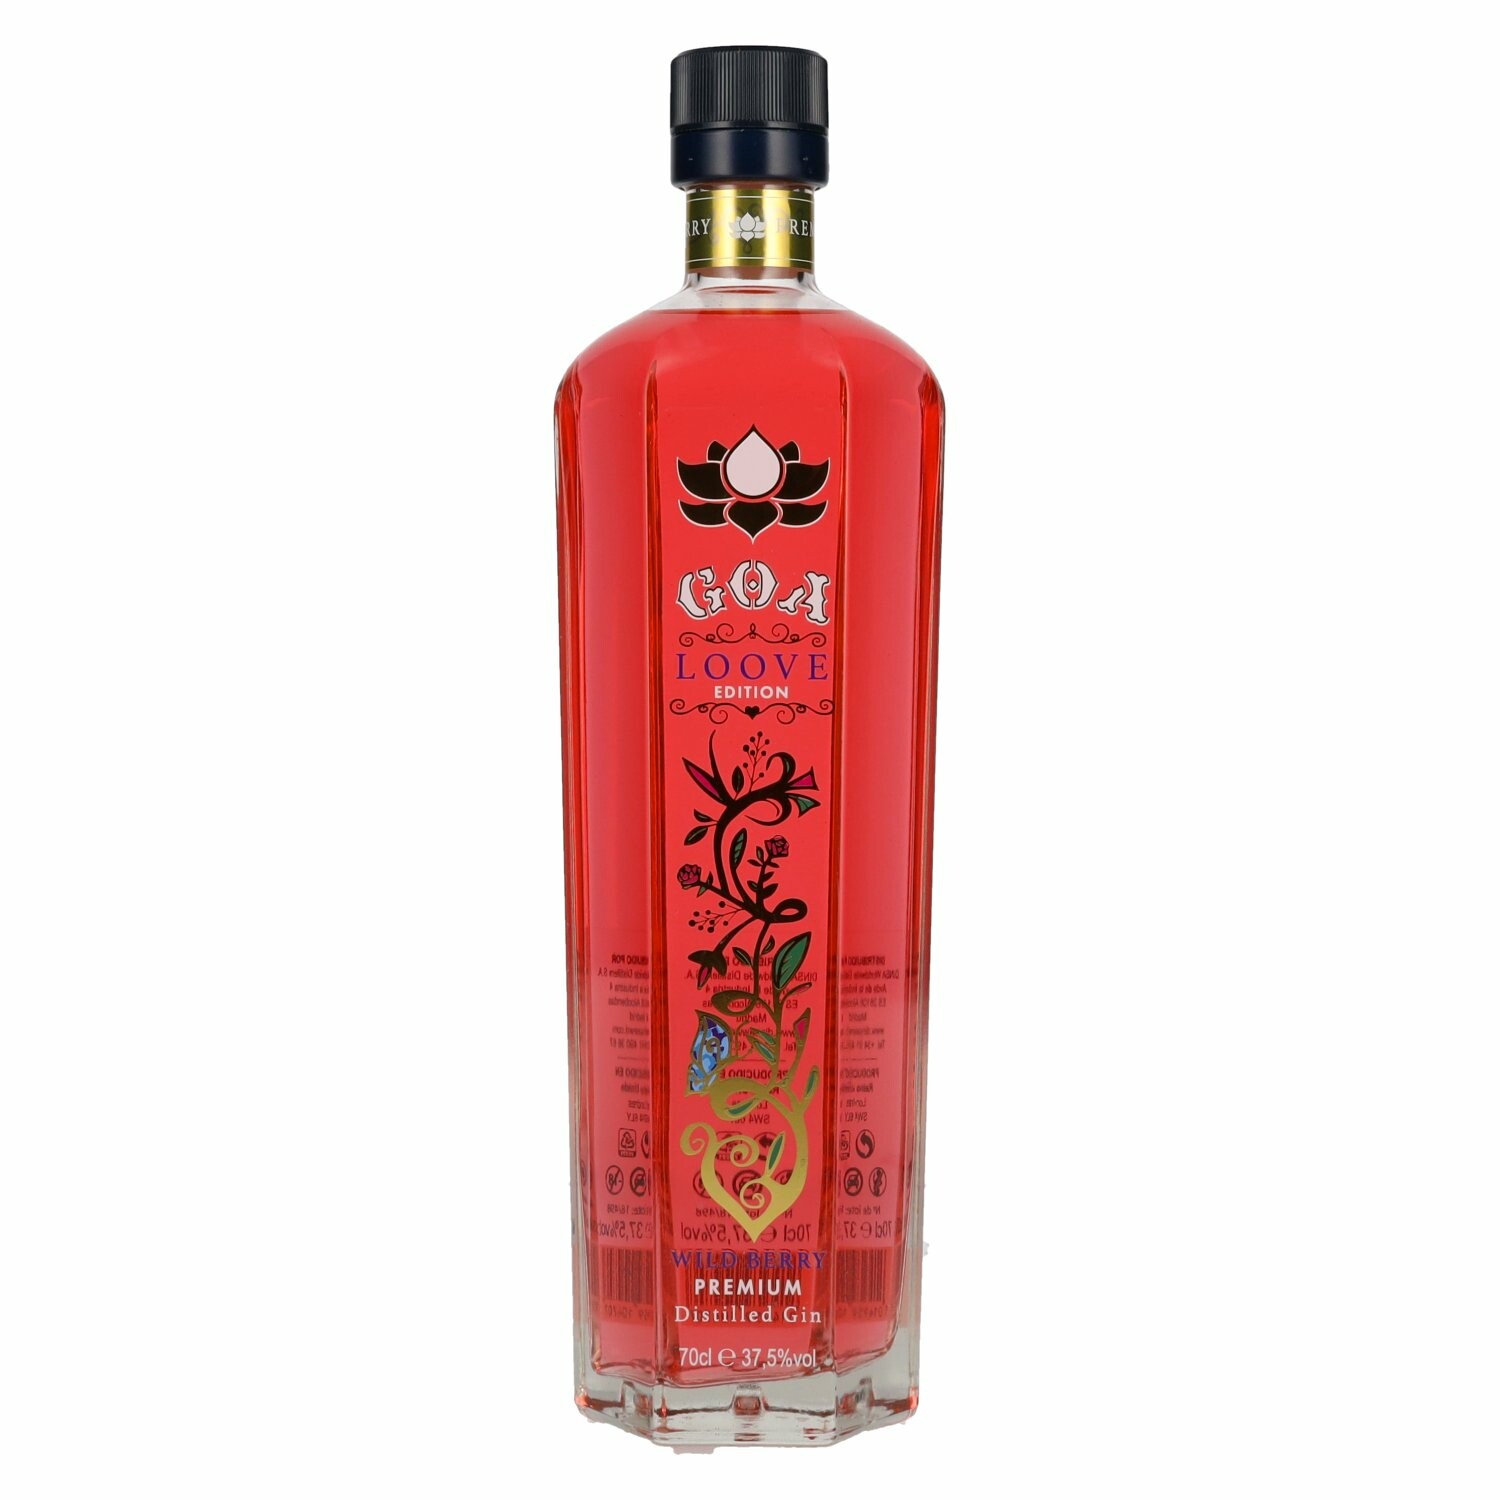 GOA LOOVE Edition Wild Berry Premium Distilled Gin 37,5% Vol. 0,7l